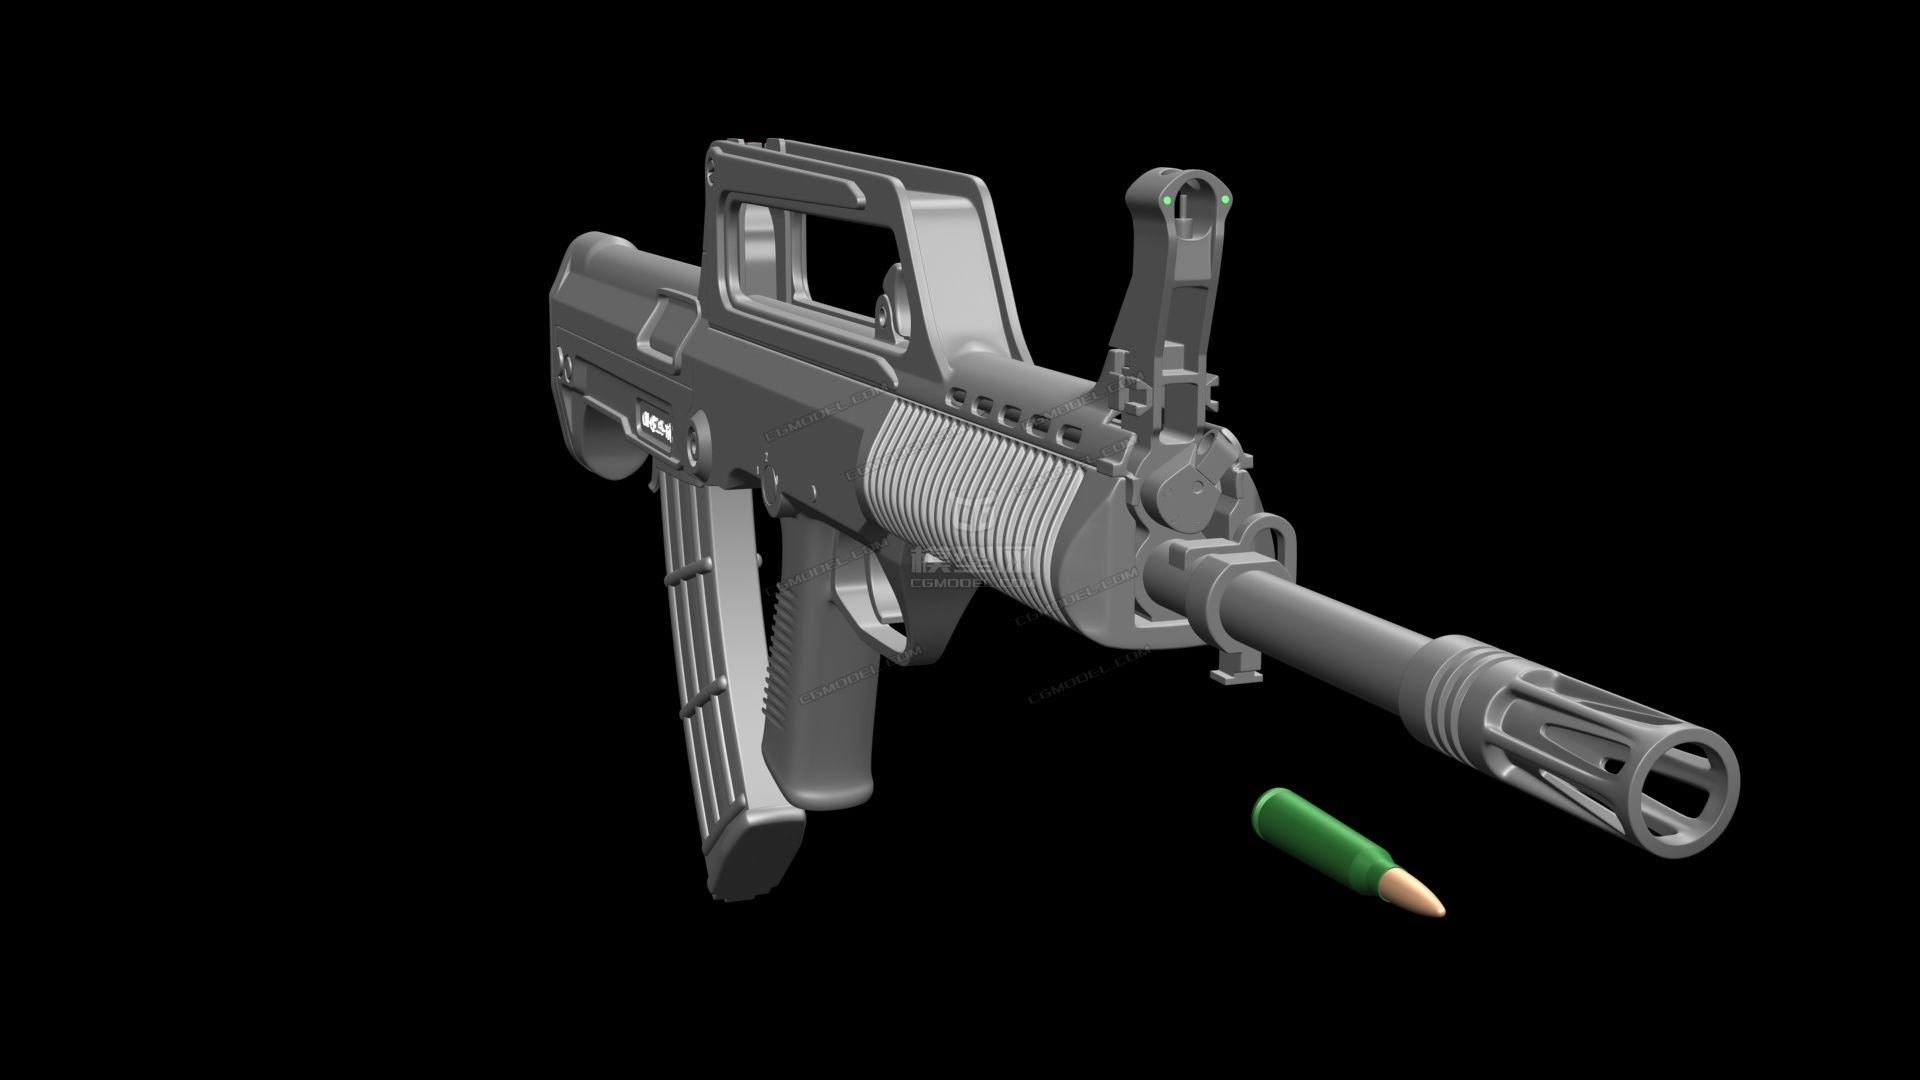 自动步枪95式 枪械模型-枪械模型模型库-3ds Max(.max)模型下载-cg模型网